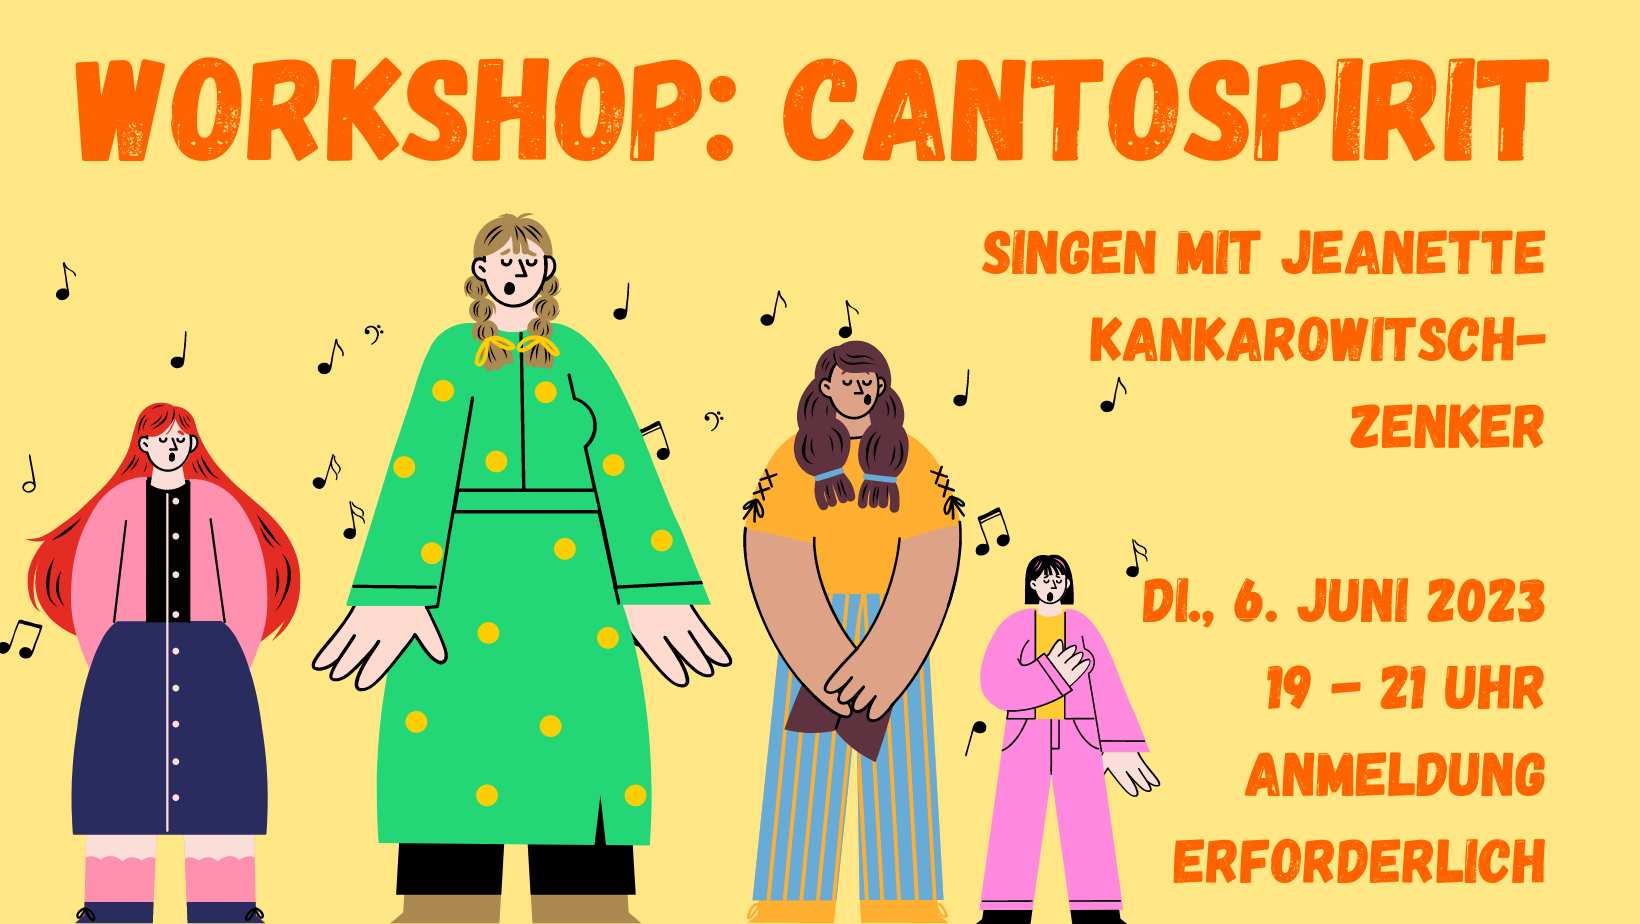 Cantospirit – Singen mit Jeanette Kankarowitsch-Zenker